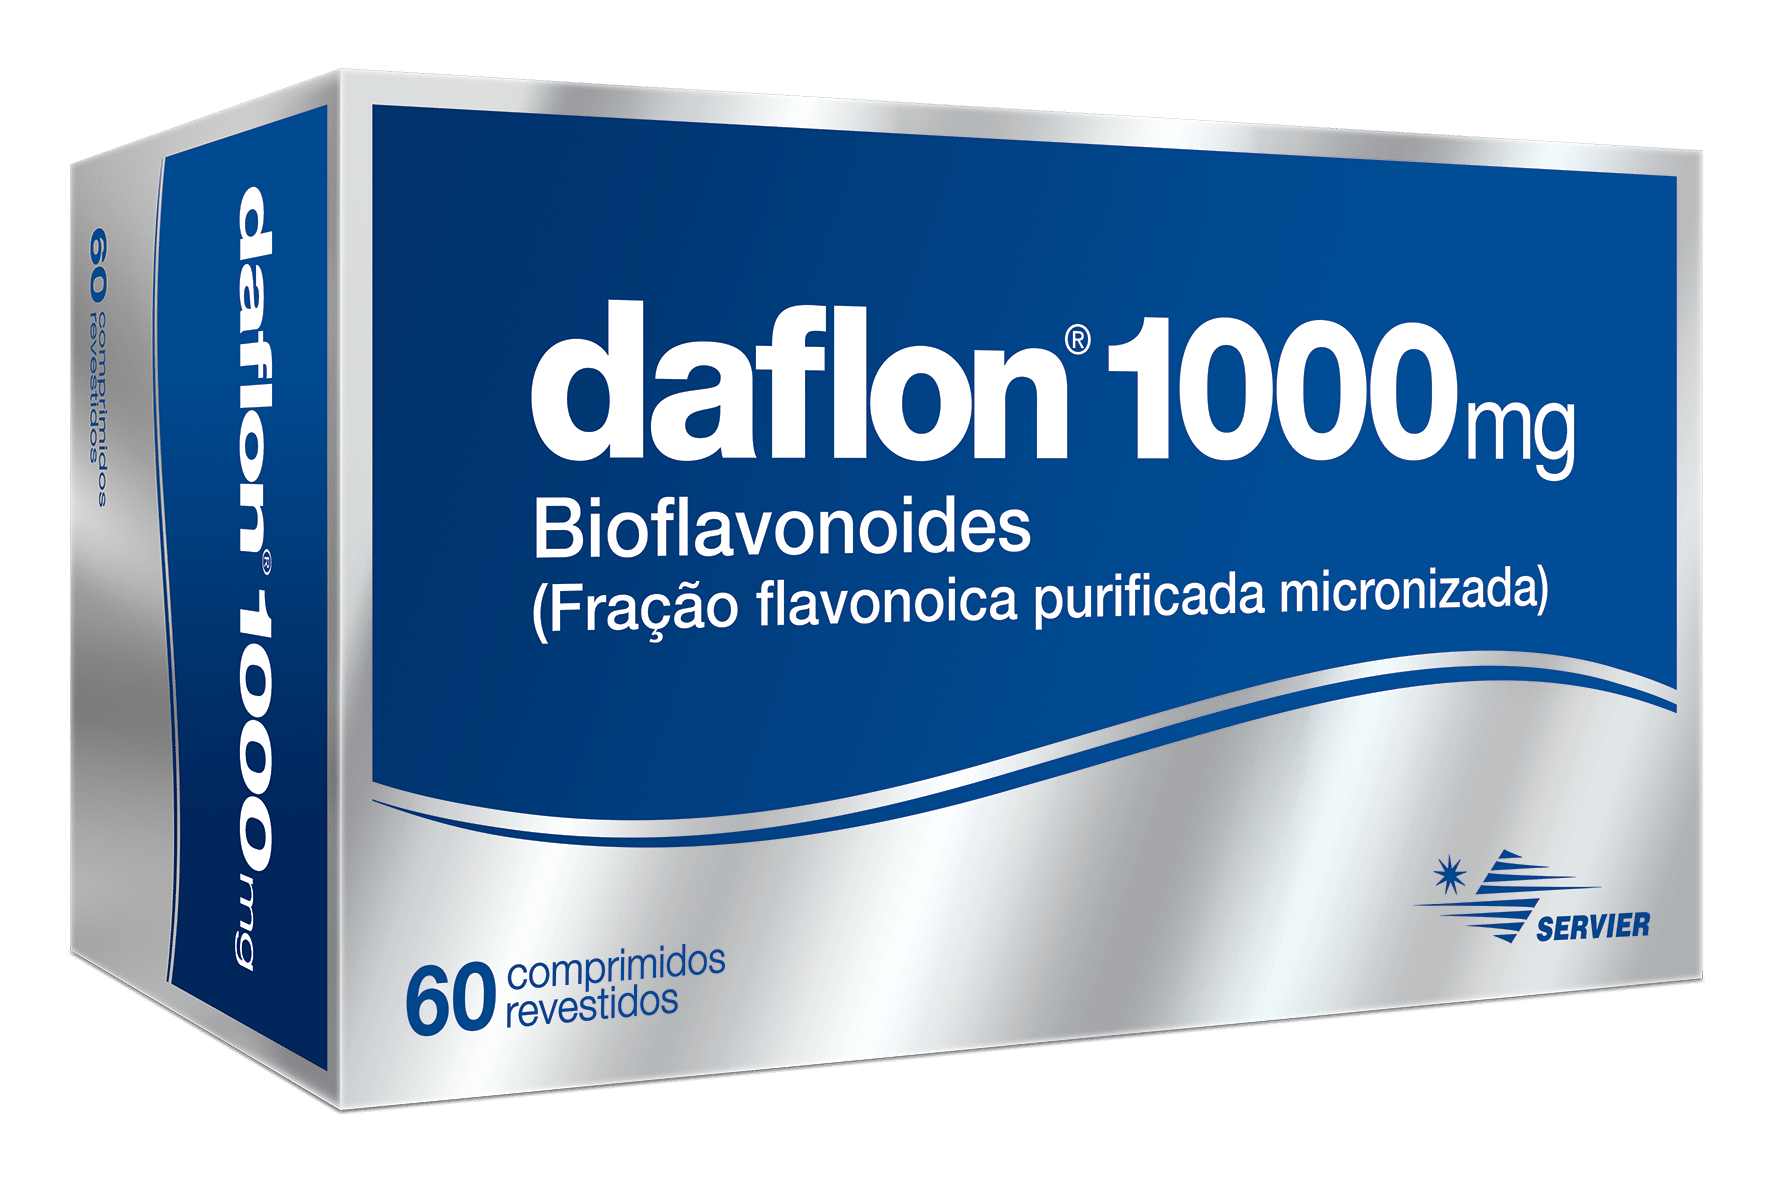 Daflon 1000mg FFPM 60 comprimidos revestidos